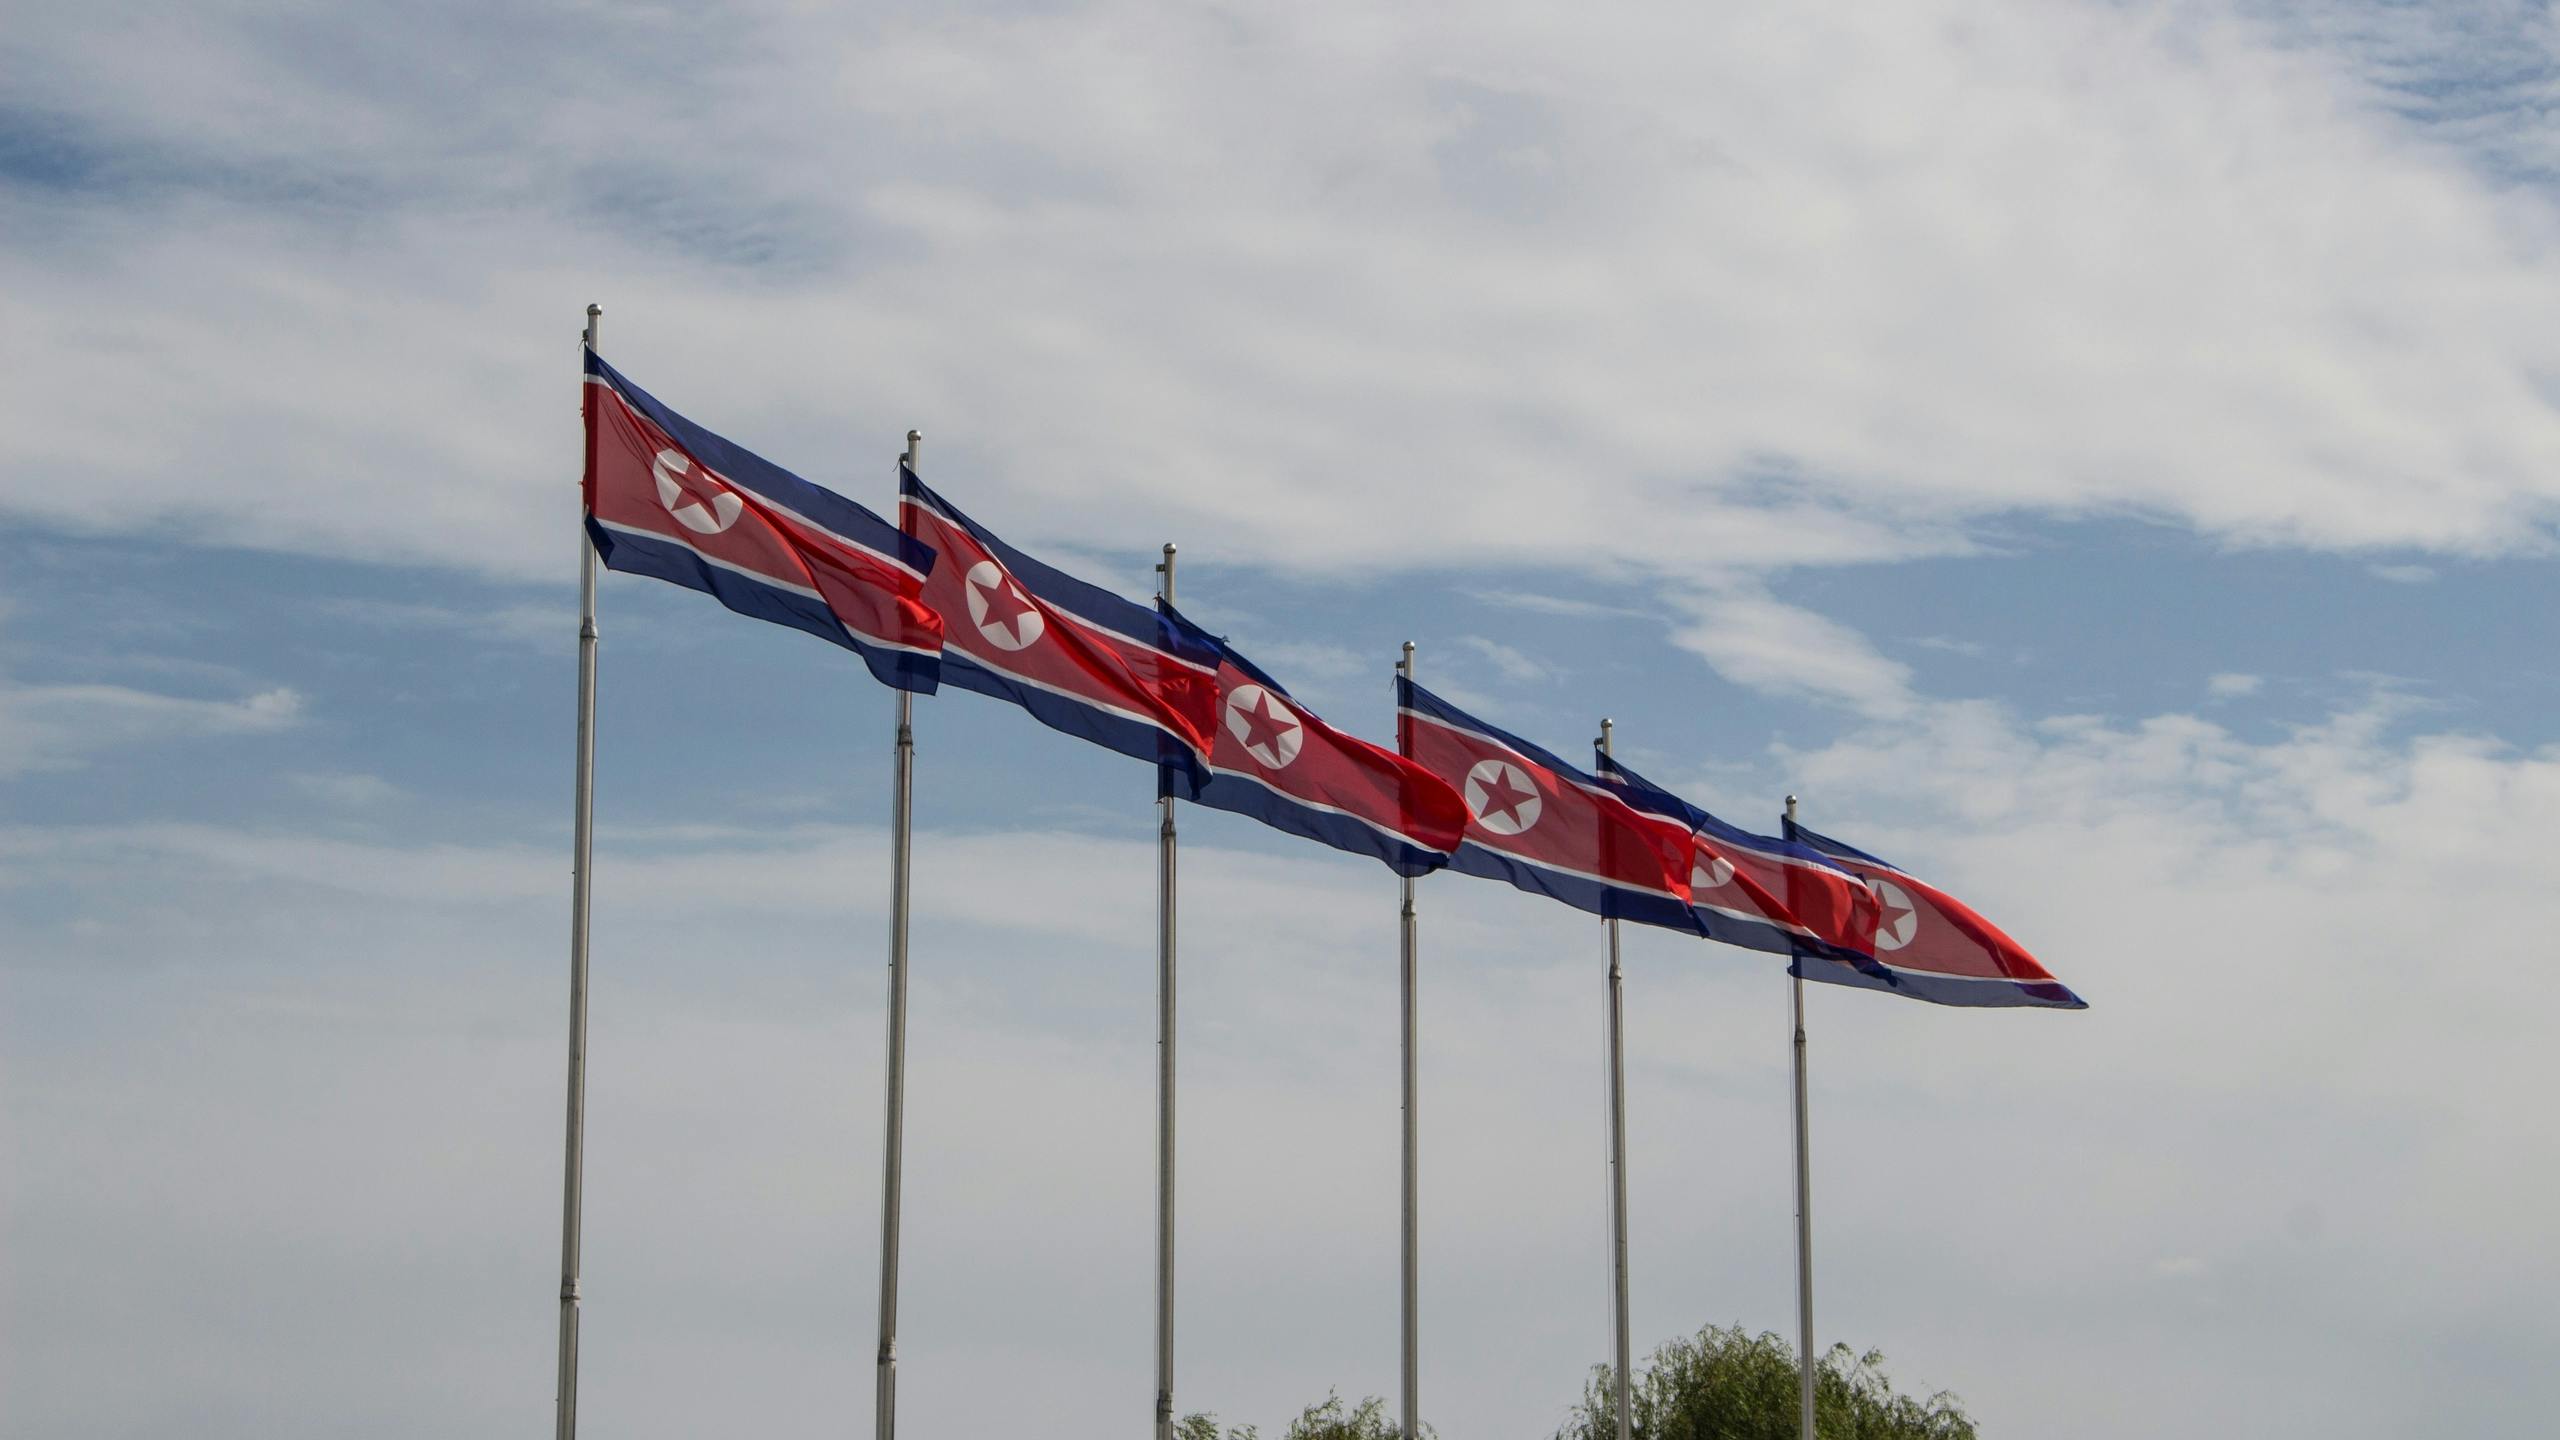 Ondernemen in Noord-Korea? Deze Nederlander doet het